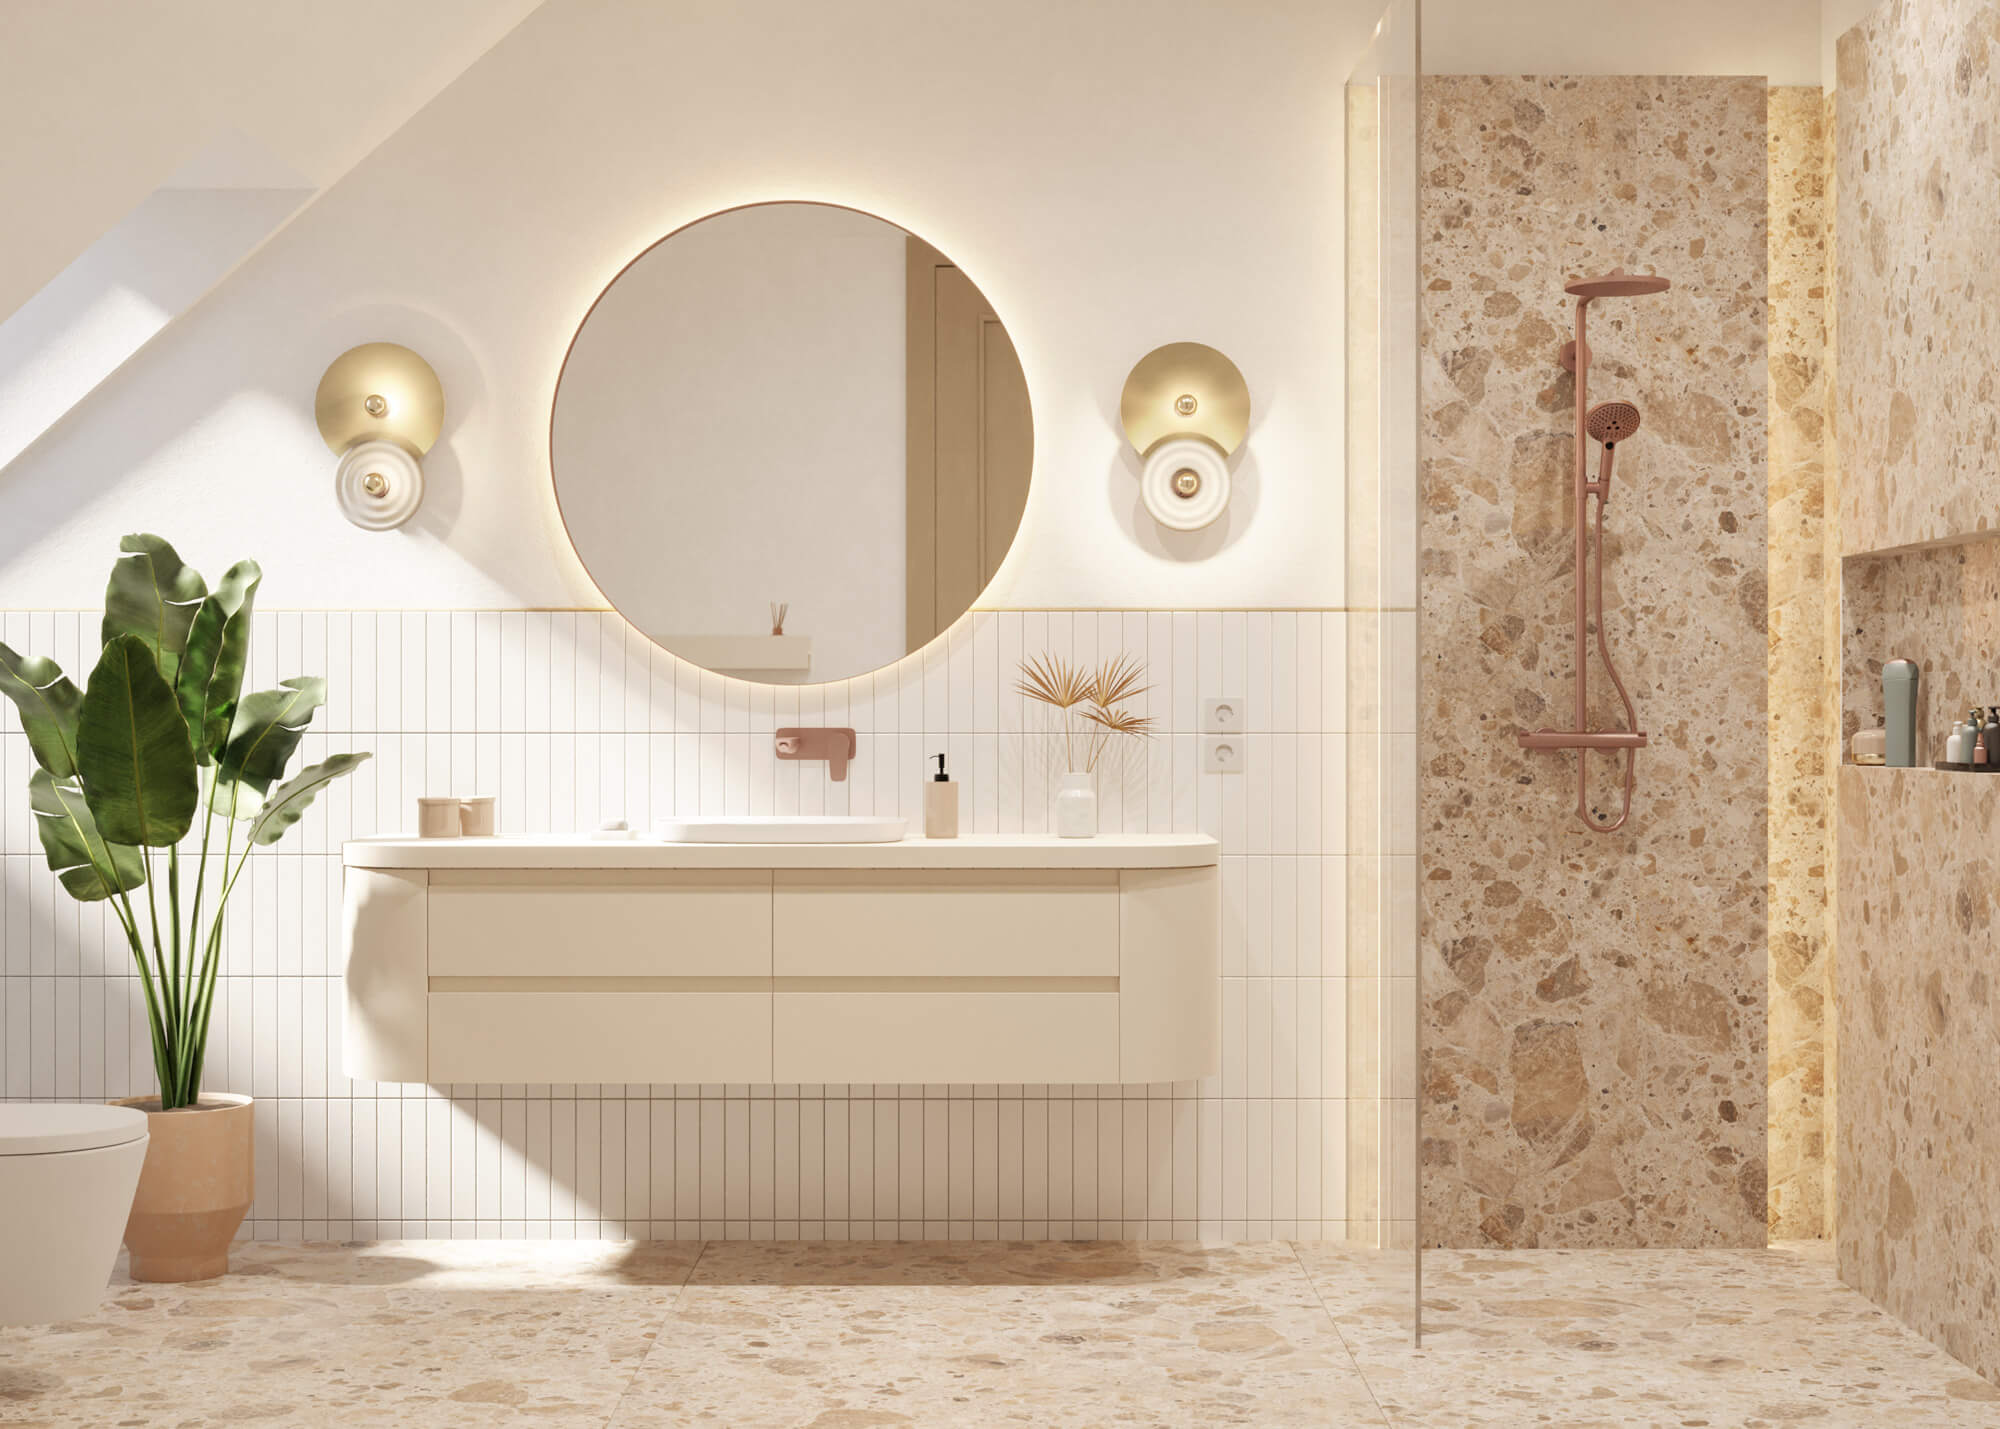 Fürdőszoba belsőépítészeti látványterv zuhanyzóval, kör alakú lámpákkal krém és bézs színben